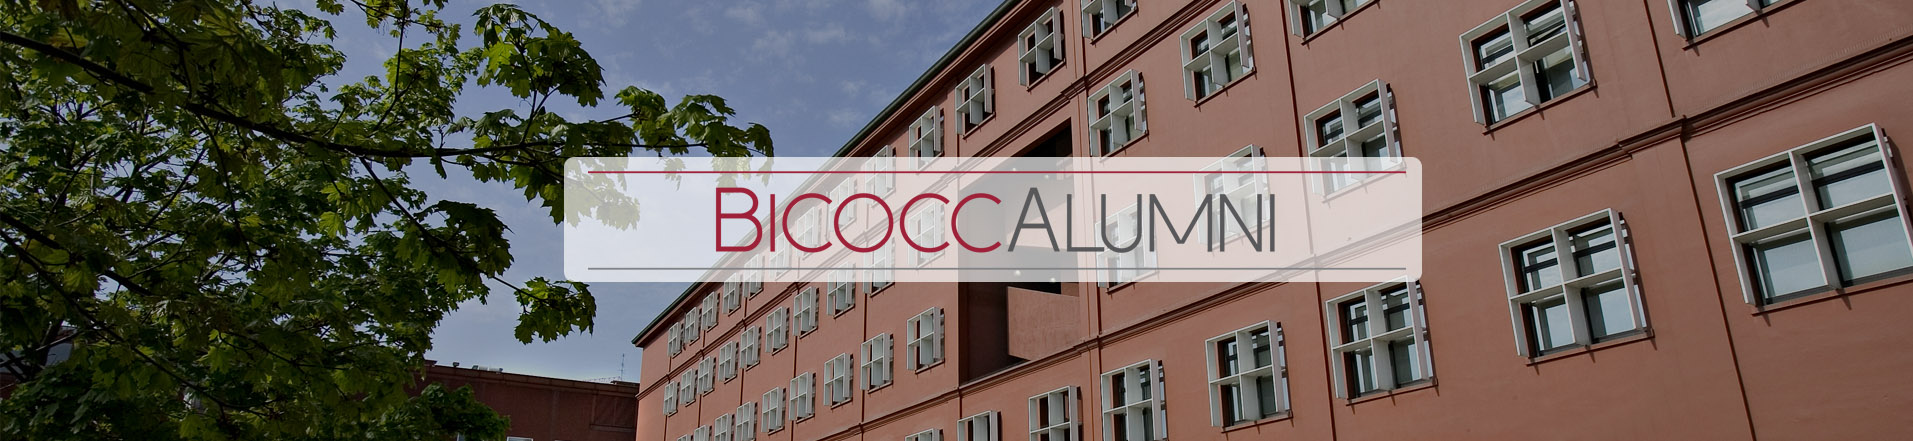 bicocca alumni slider